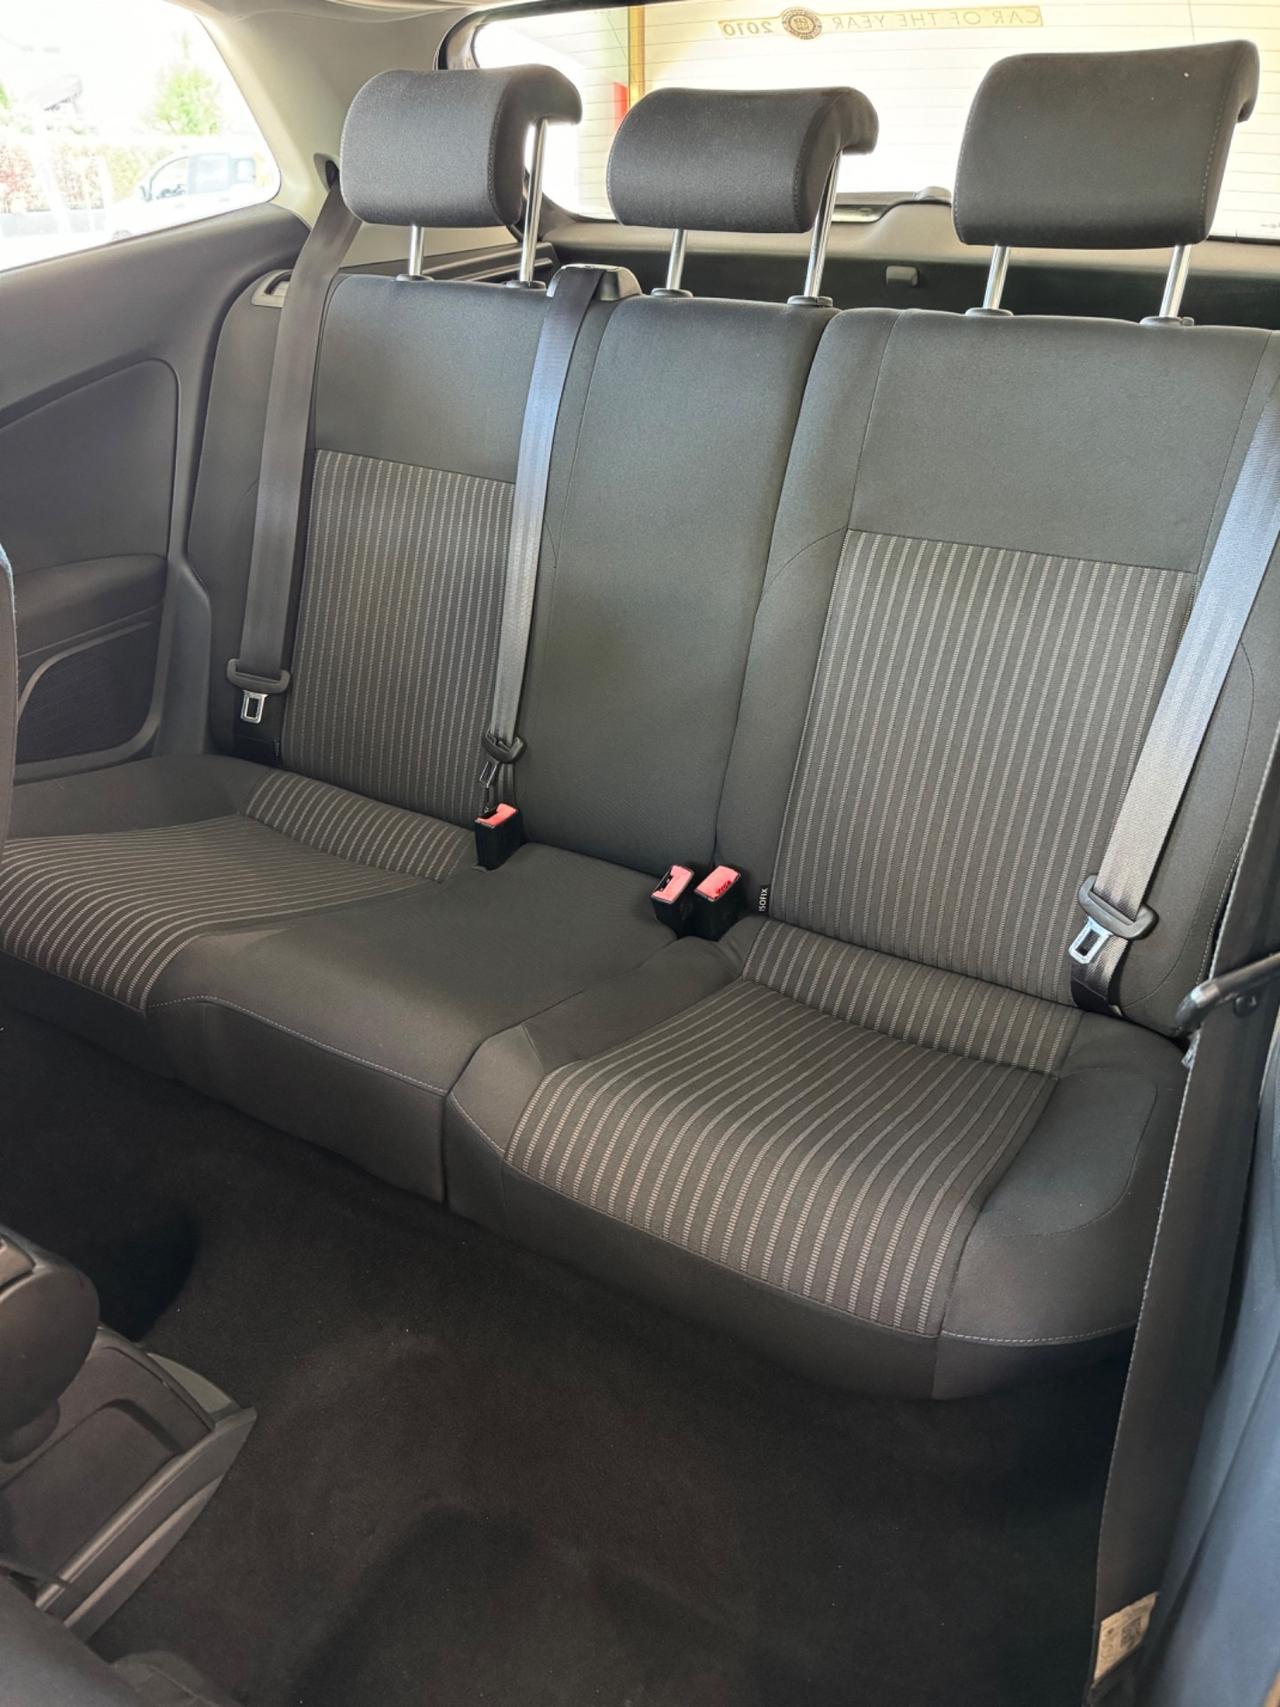 Volkswagen Polo 1.4 3 porte Comfortline